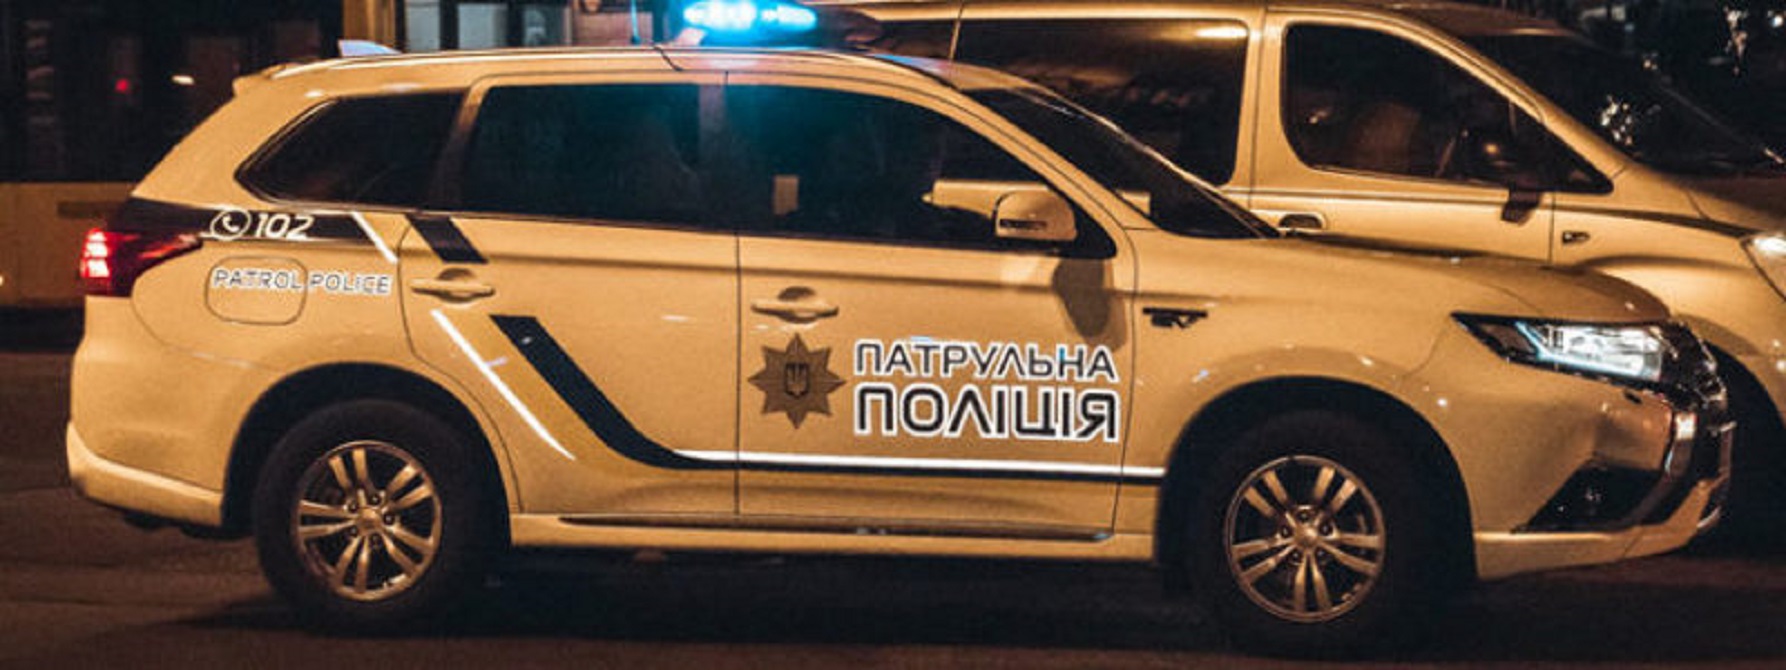 Под Киевом убили полицейского - фото 1